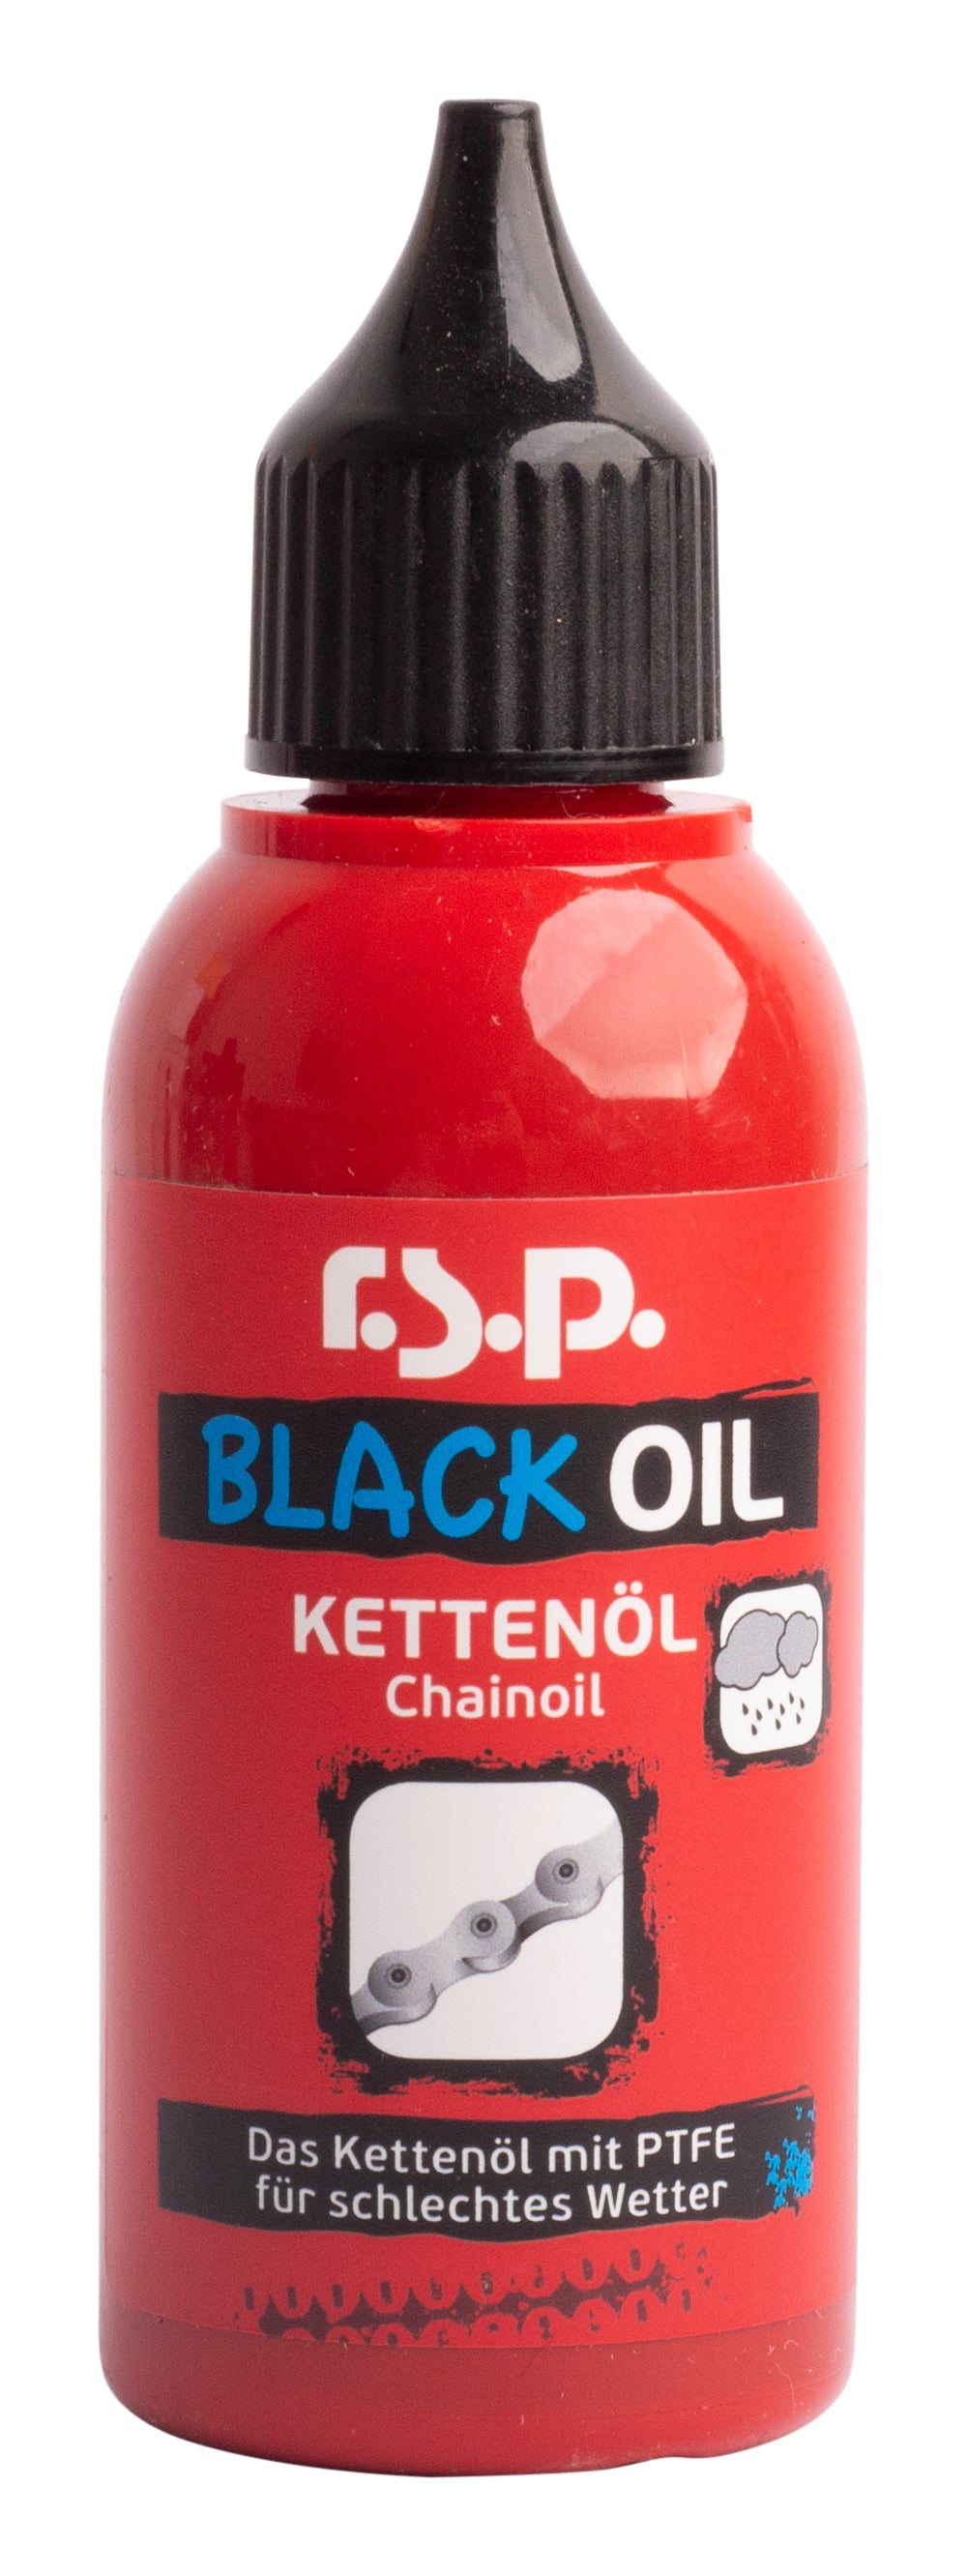 r.s.p. BLACK OIL (Kettenöl für schlechtes Wetter) 50ml – The